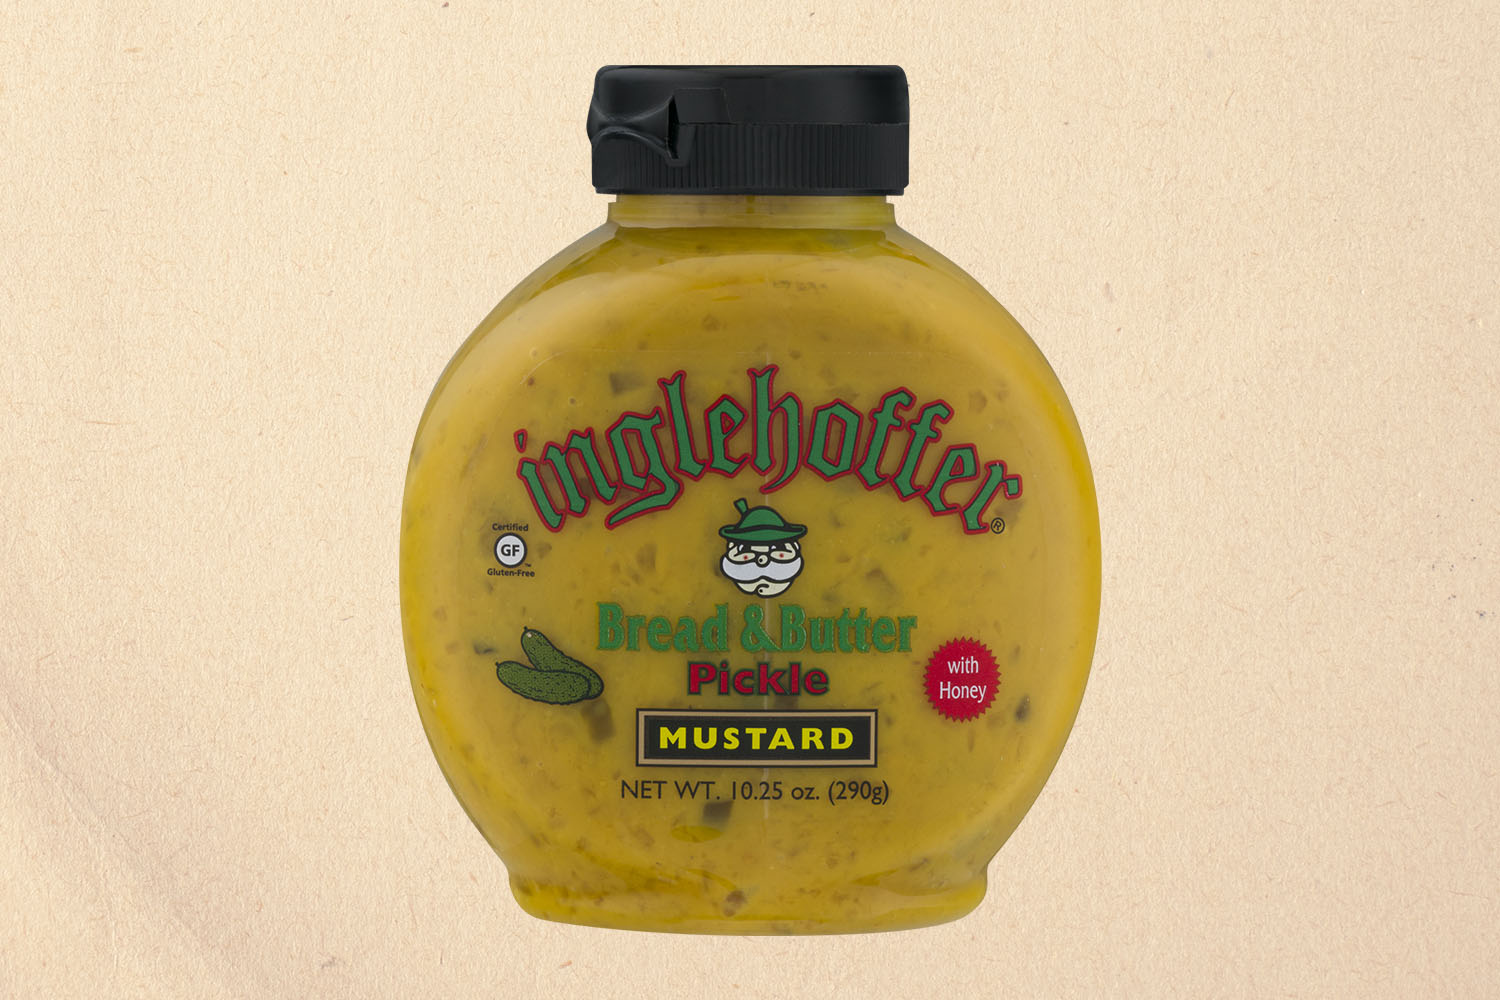 Inglehoffer Bread & Butter PIckle mustard